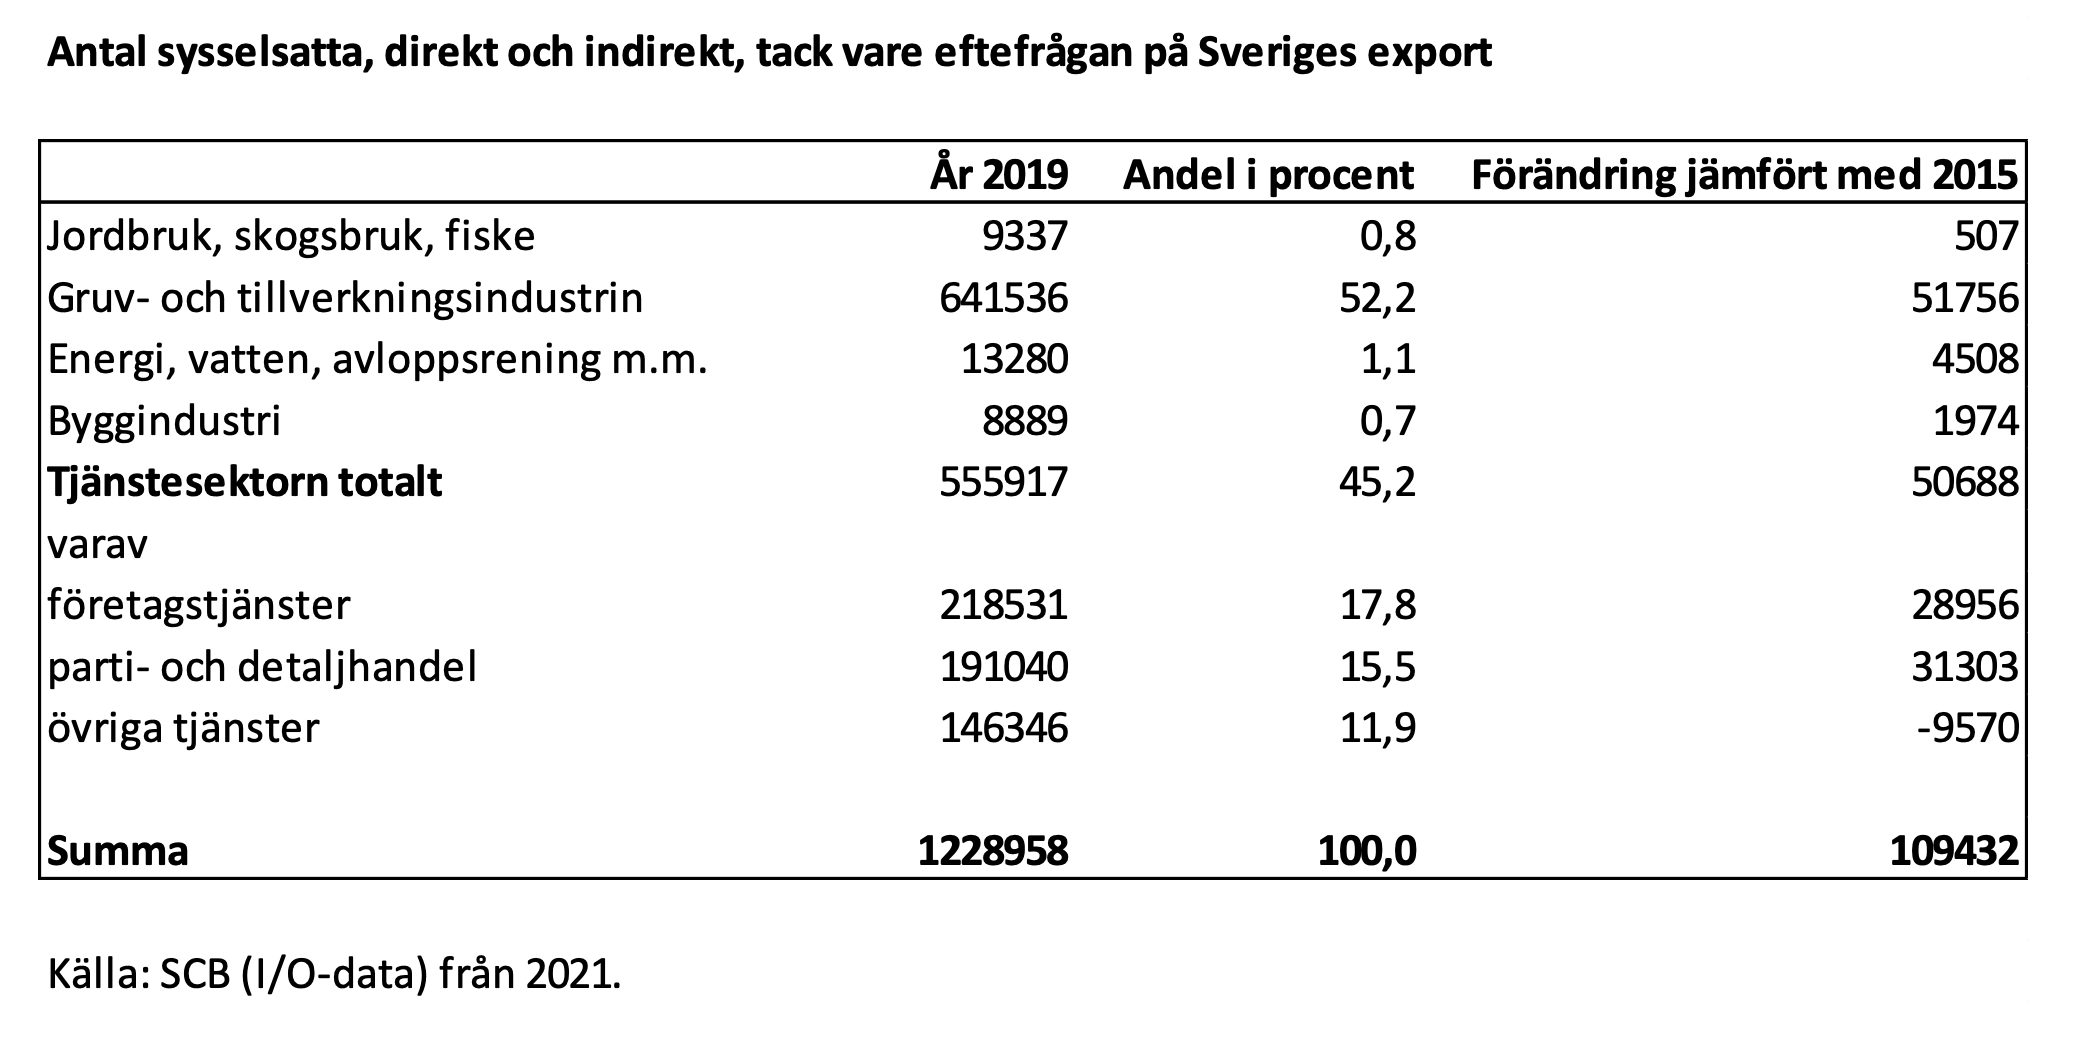 antal-sysselsatta-direkt-och-indirekt-tack-vare-efterfragan-pa-sveriges-export.png